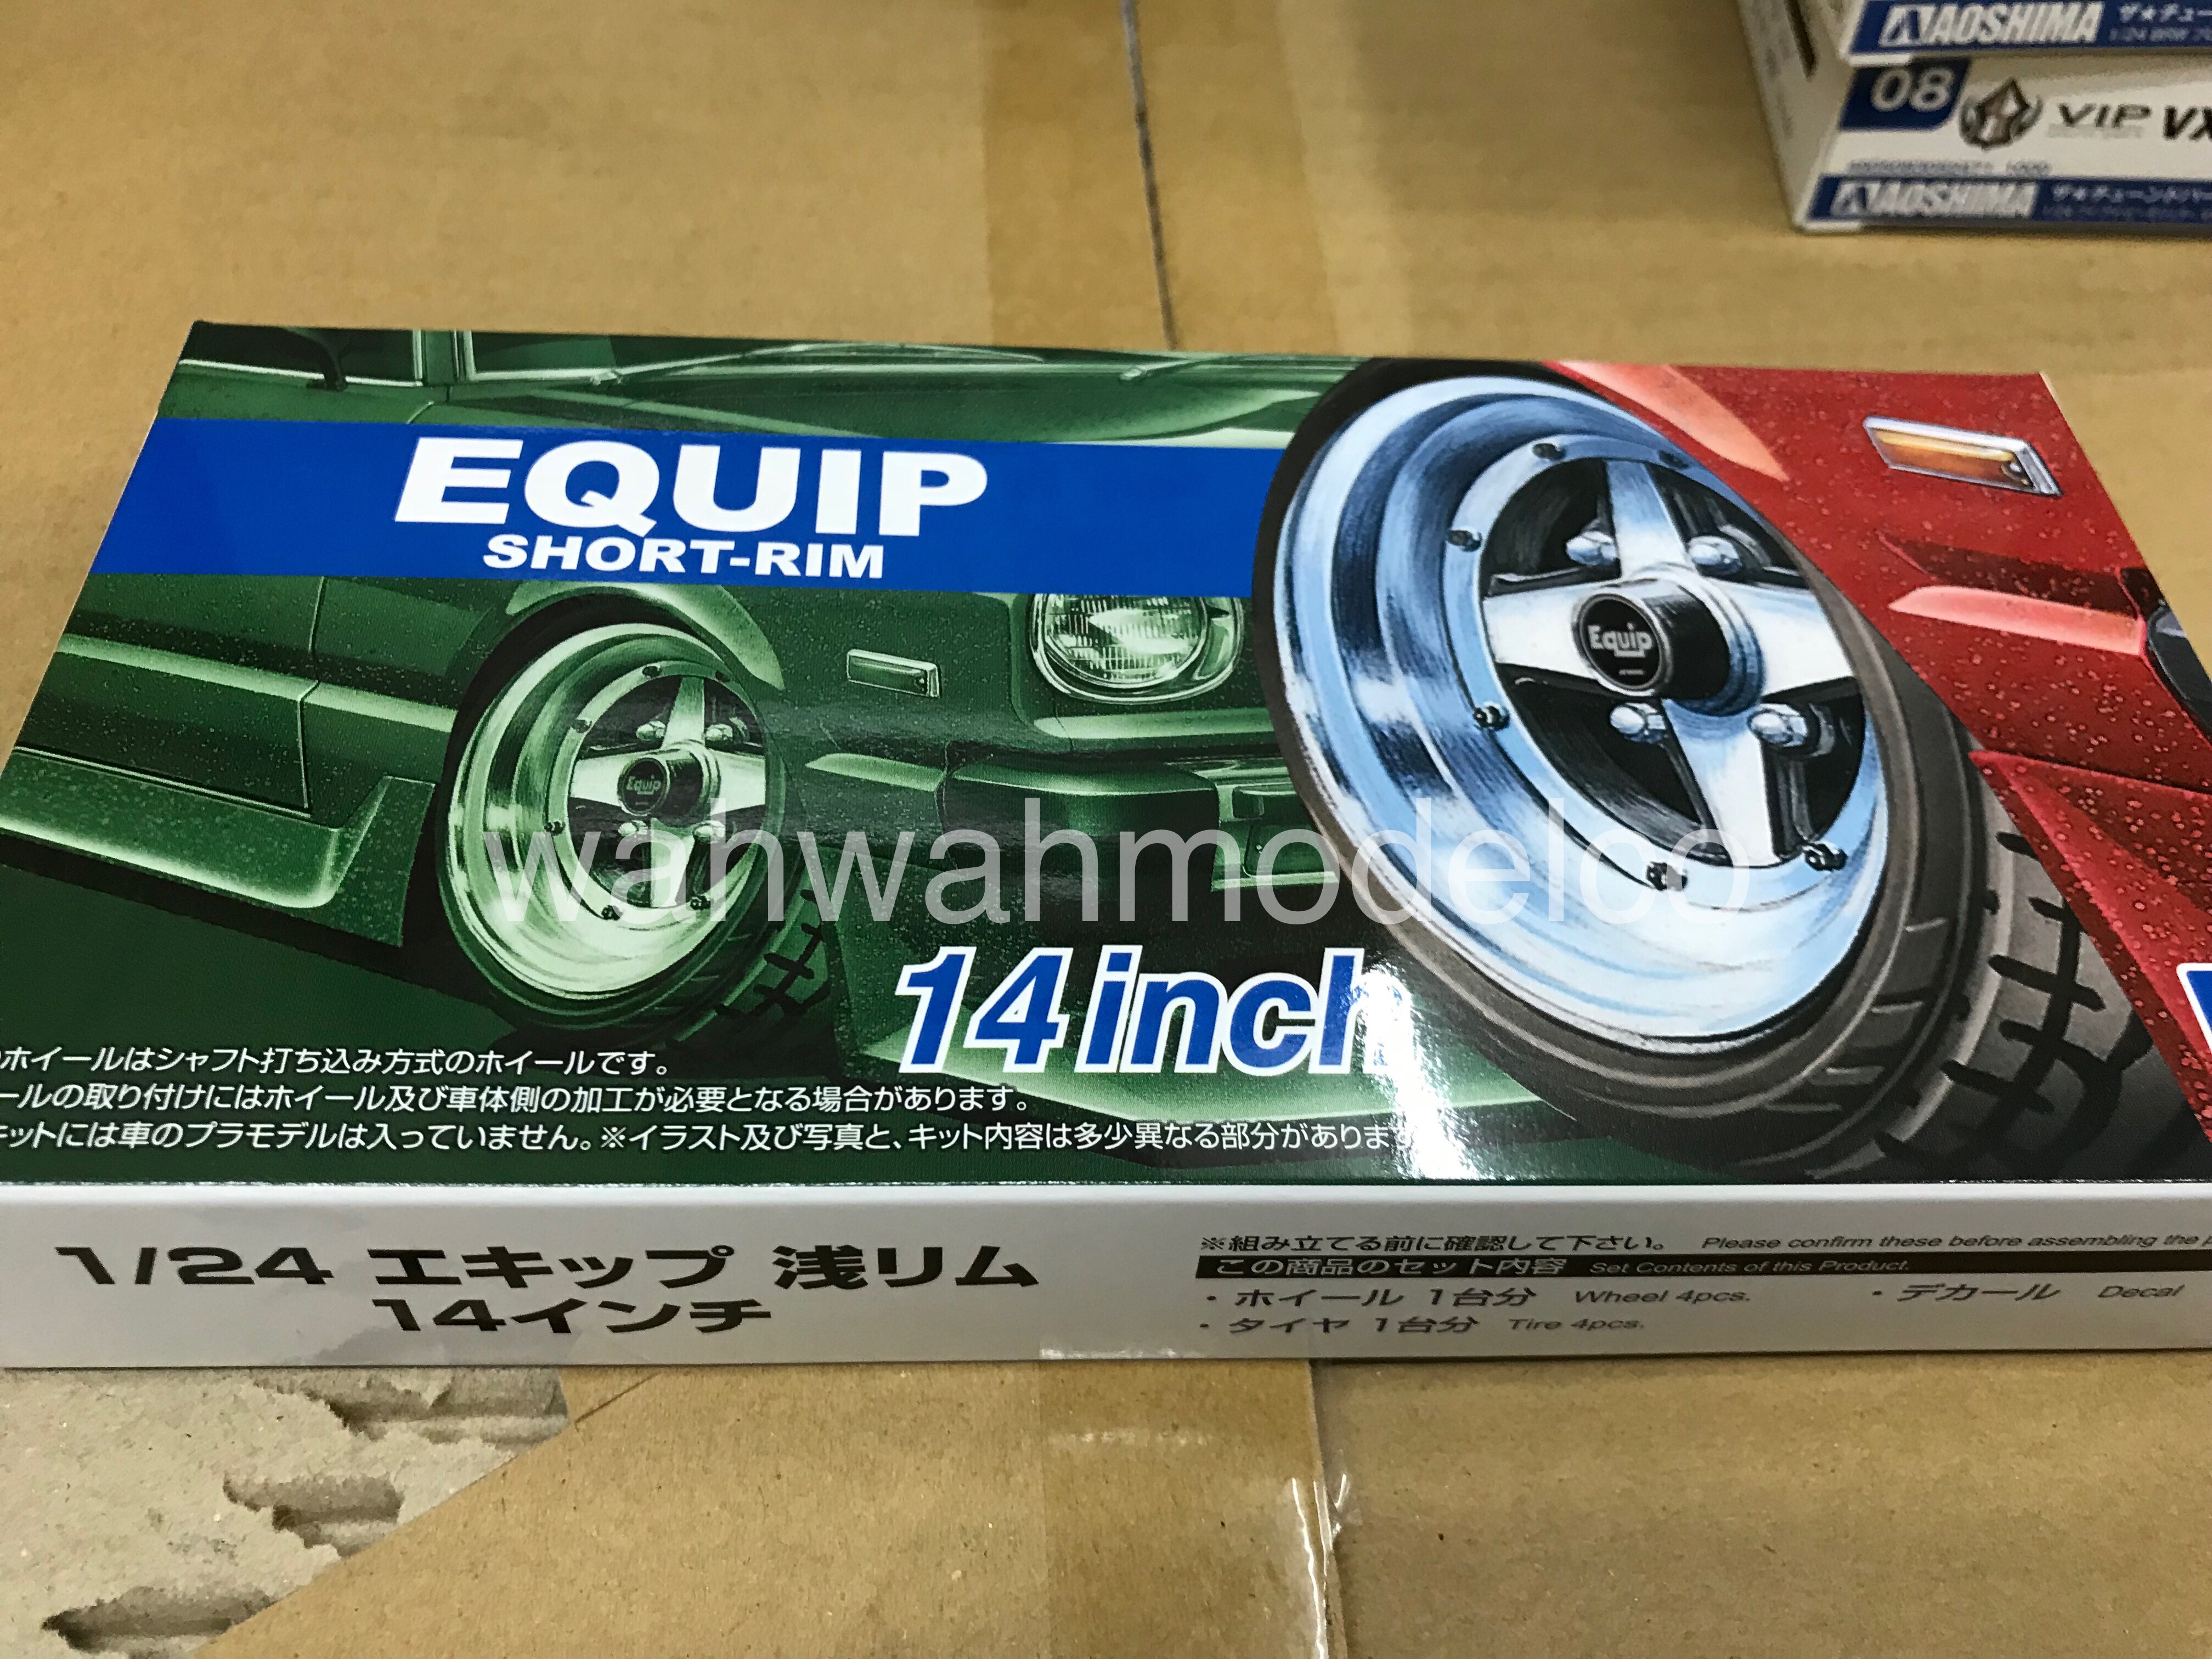 Aoshima 55304 Tuned Parts 88 1/24 LowenHart LD5 LX 19 inch Tire Wheel set 